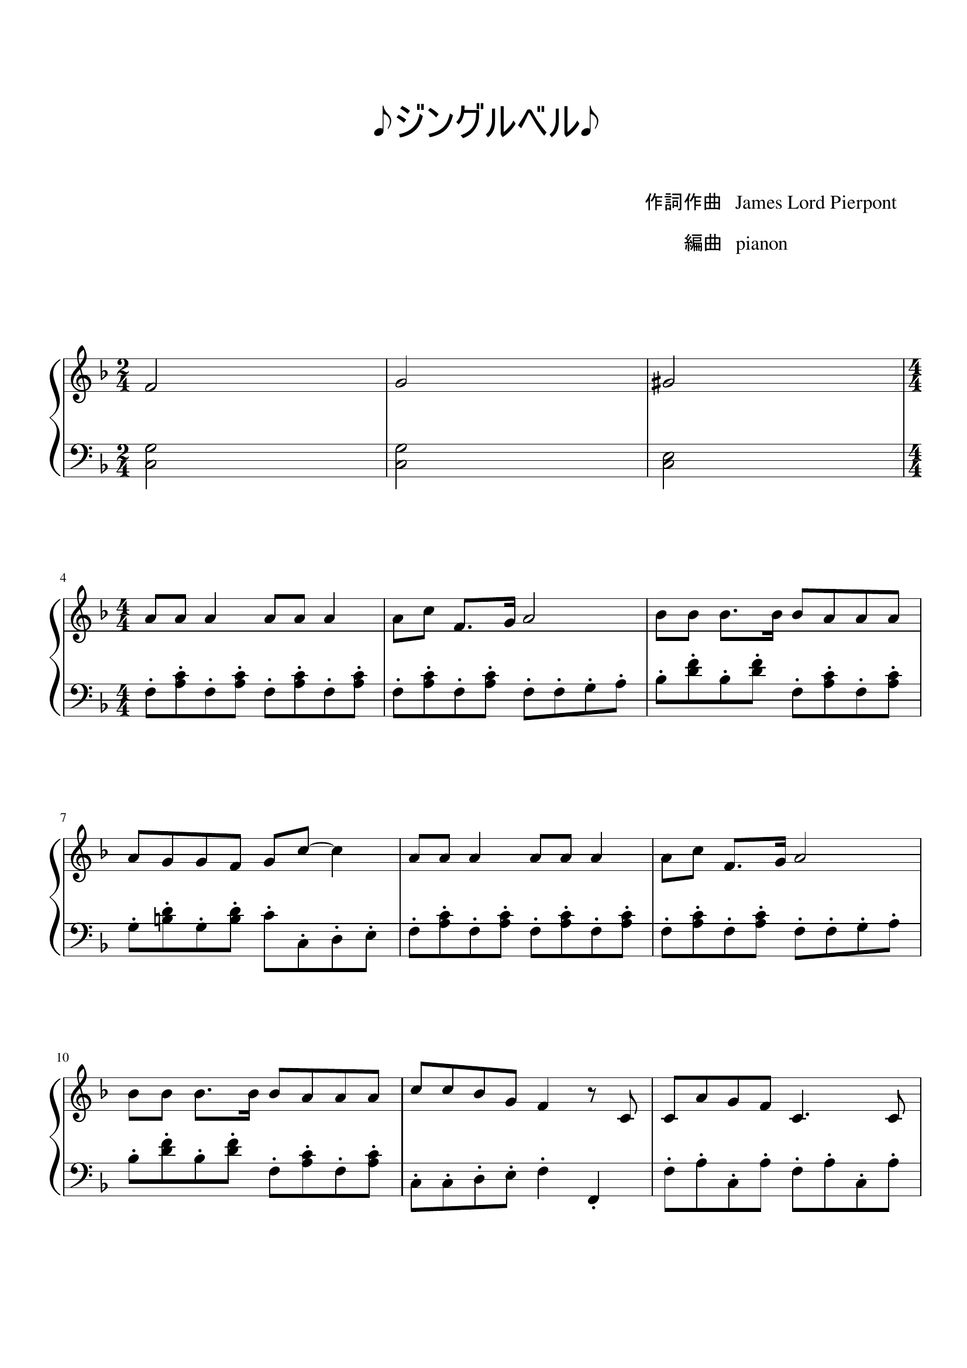 ジングルベル by pianon楽譜